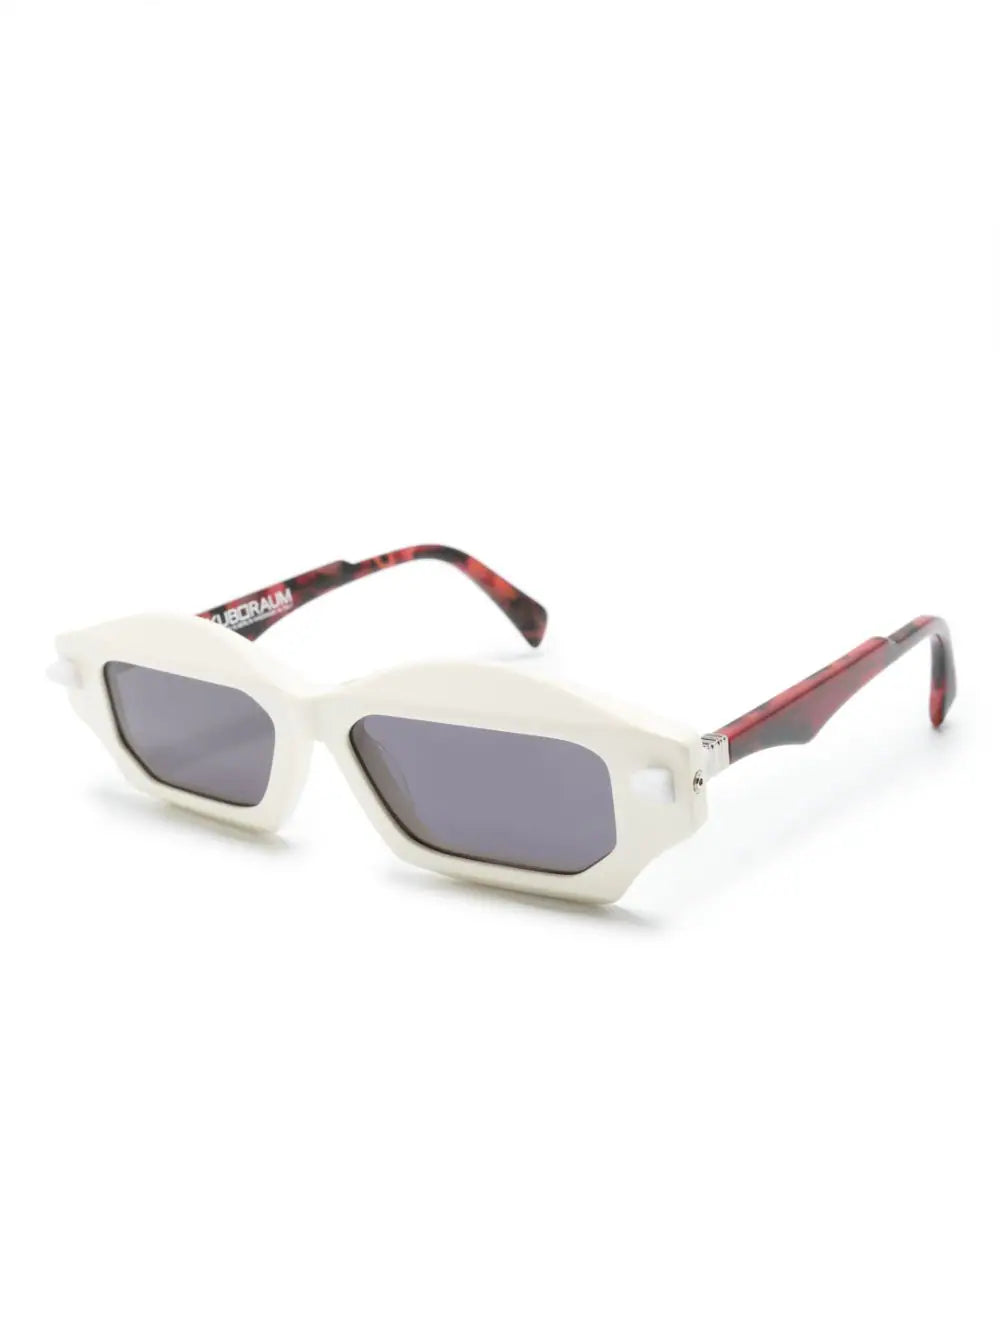 angular slim-frame sunglasses